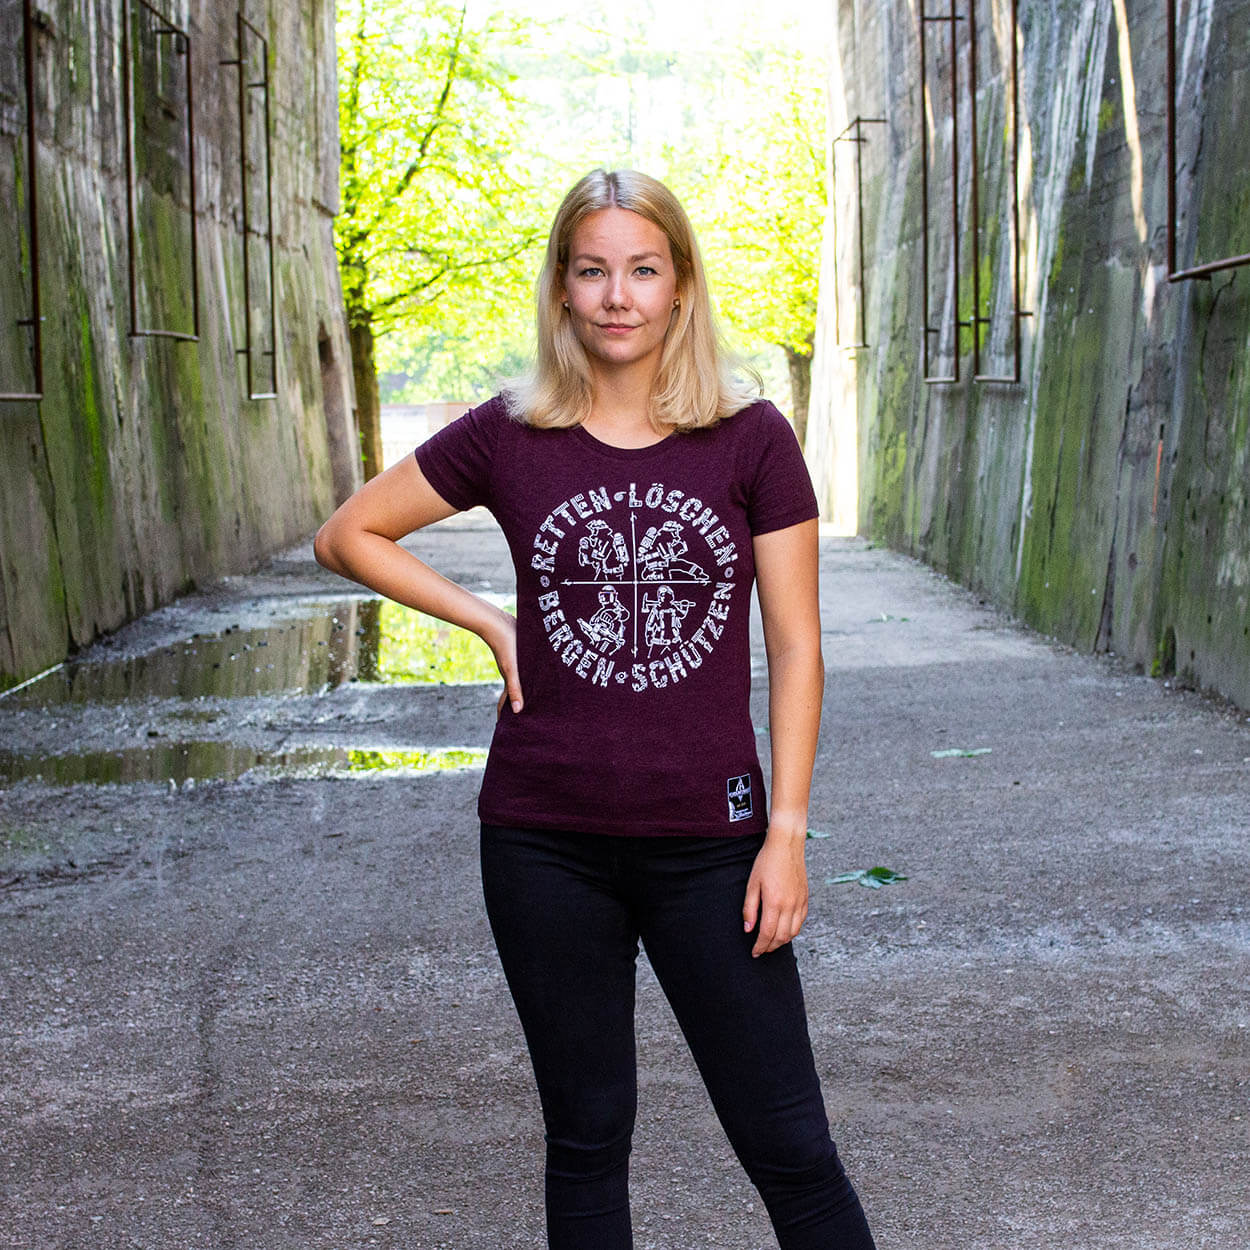 Retten Löschen Bergen Schützen - Design Frauen T-Shirt rot